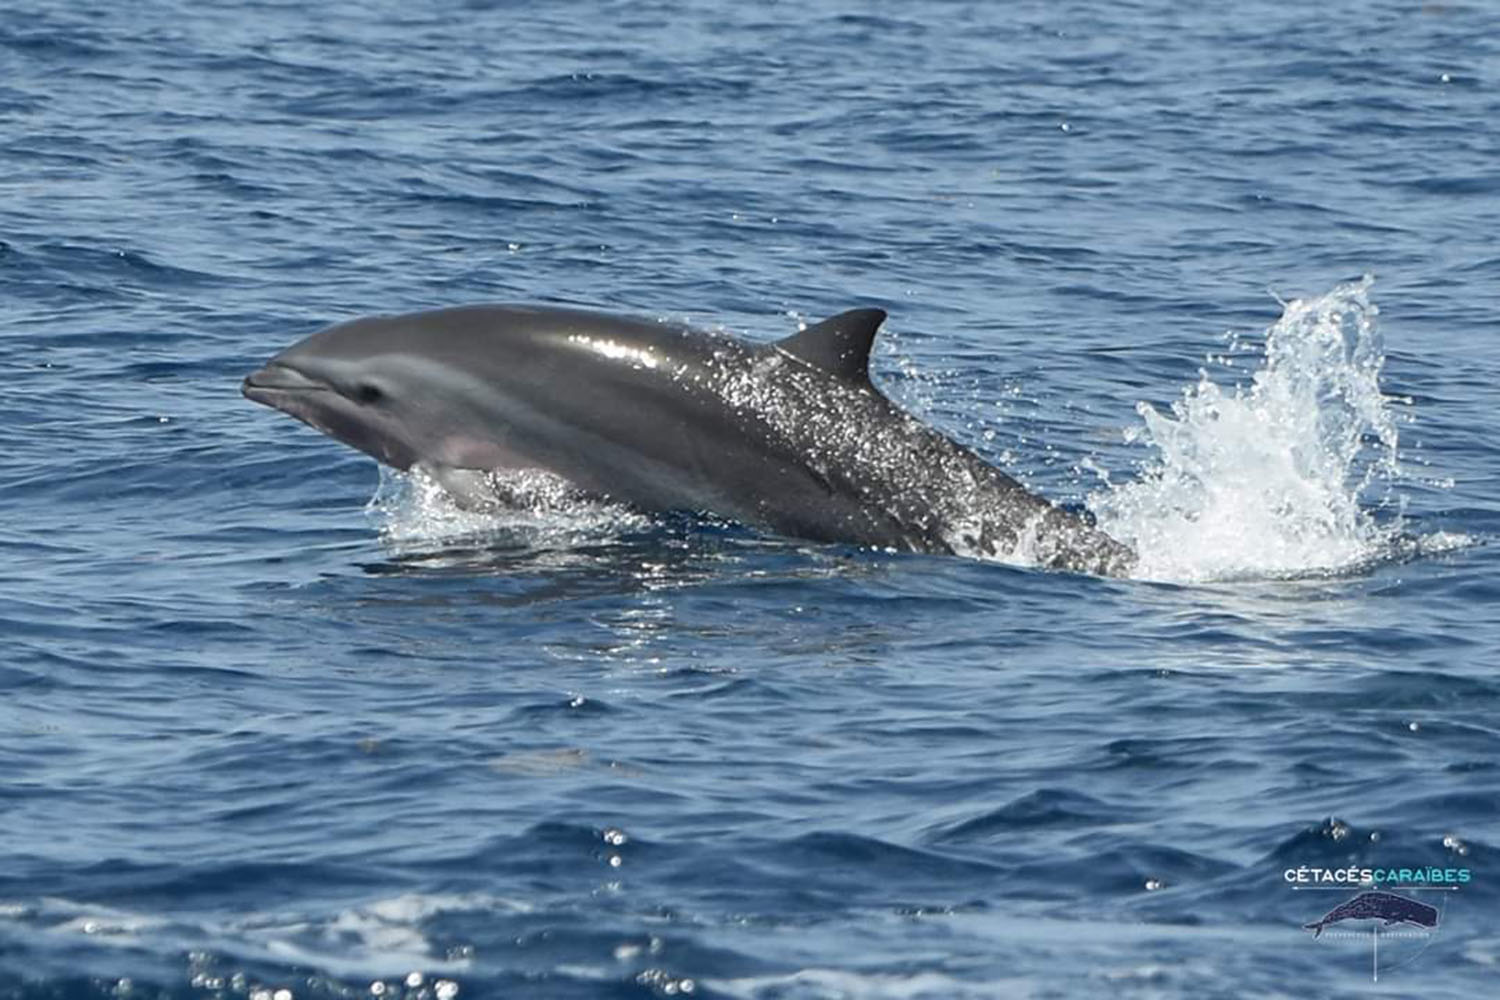 voyage scientifique cetaces et faune marine de guadeloupe copyright Cedric Millon 30